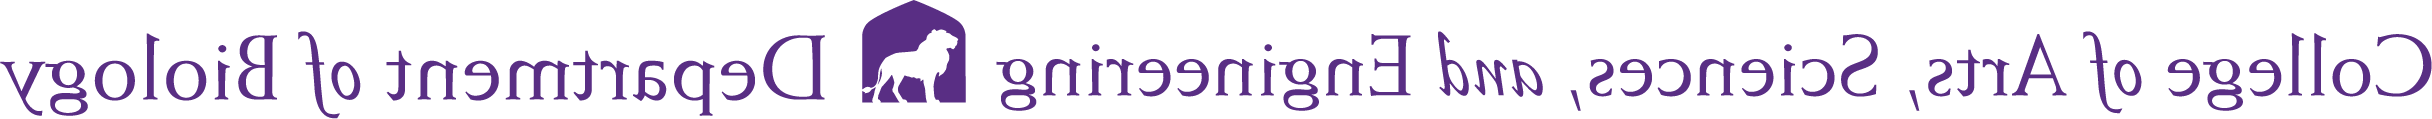 biology logo 2